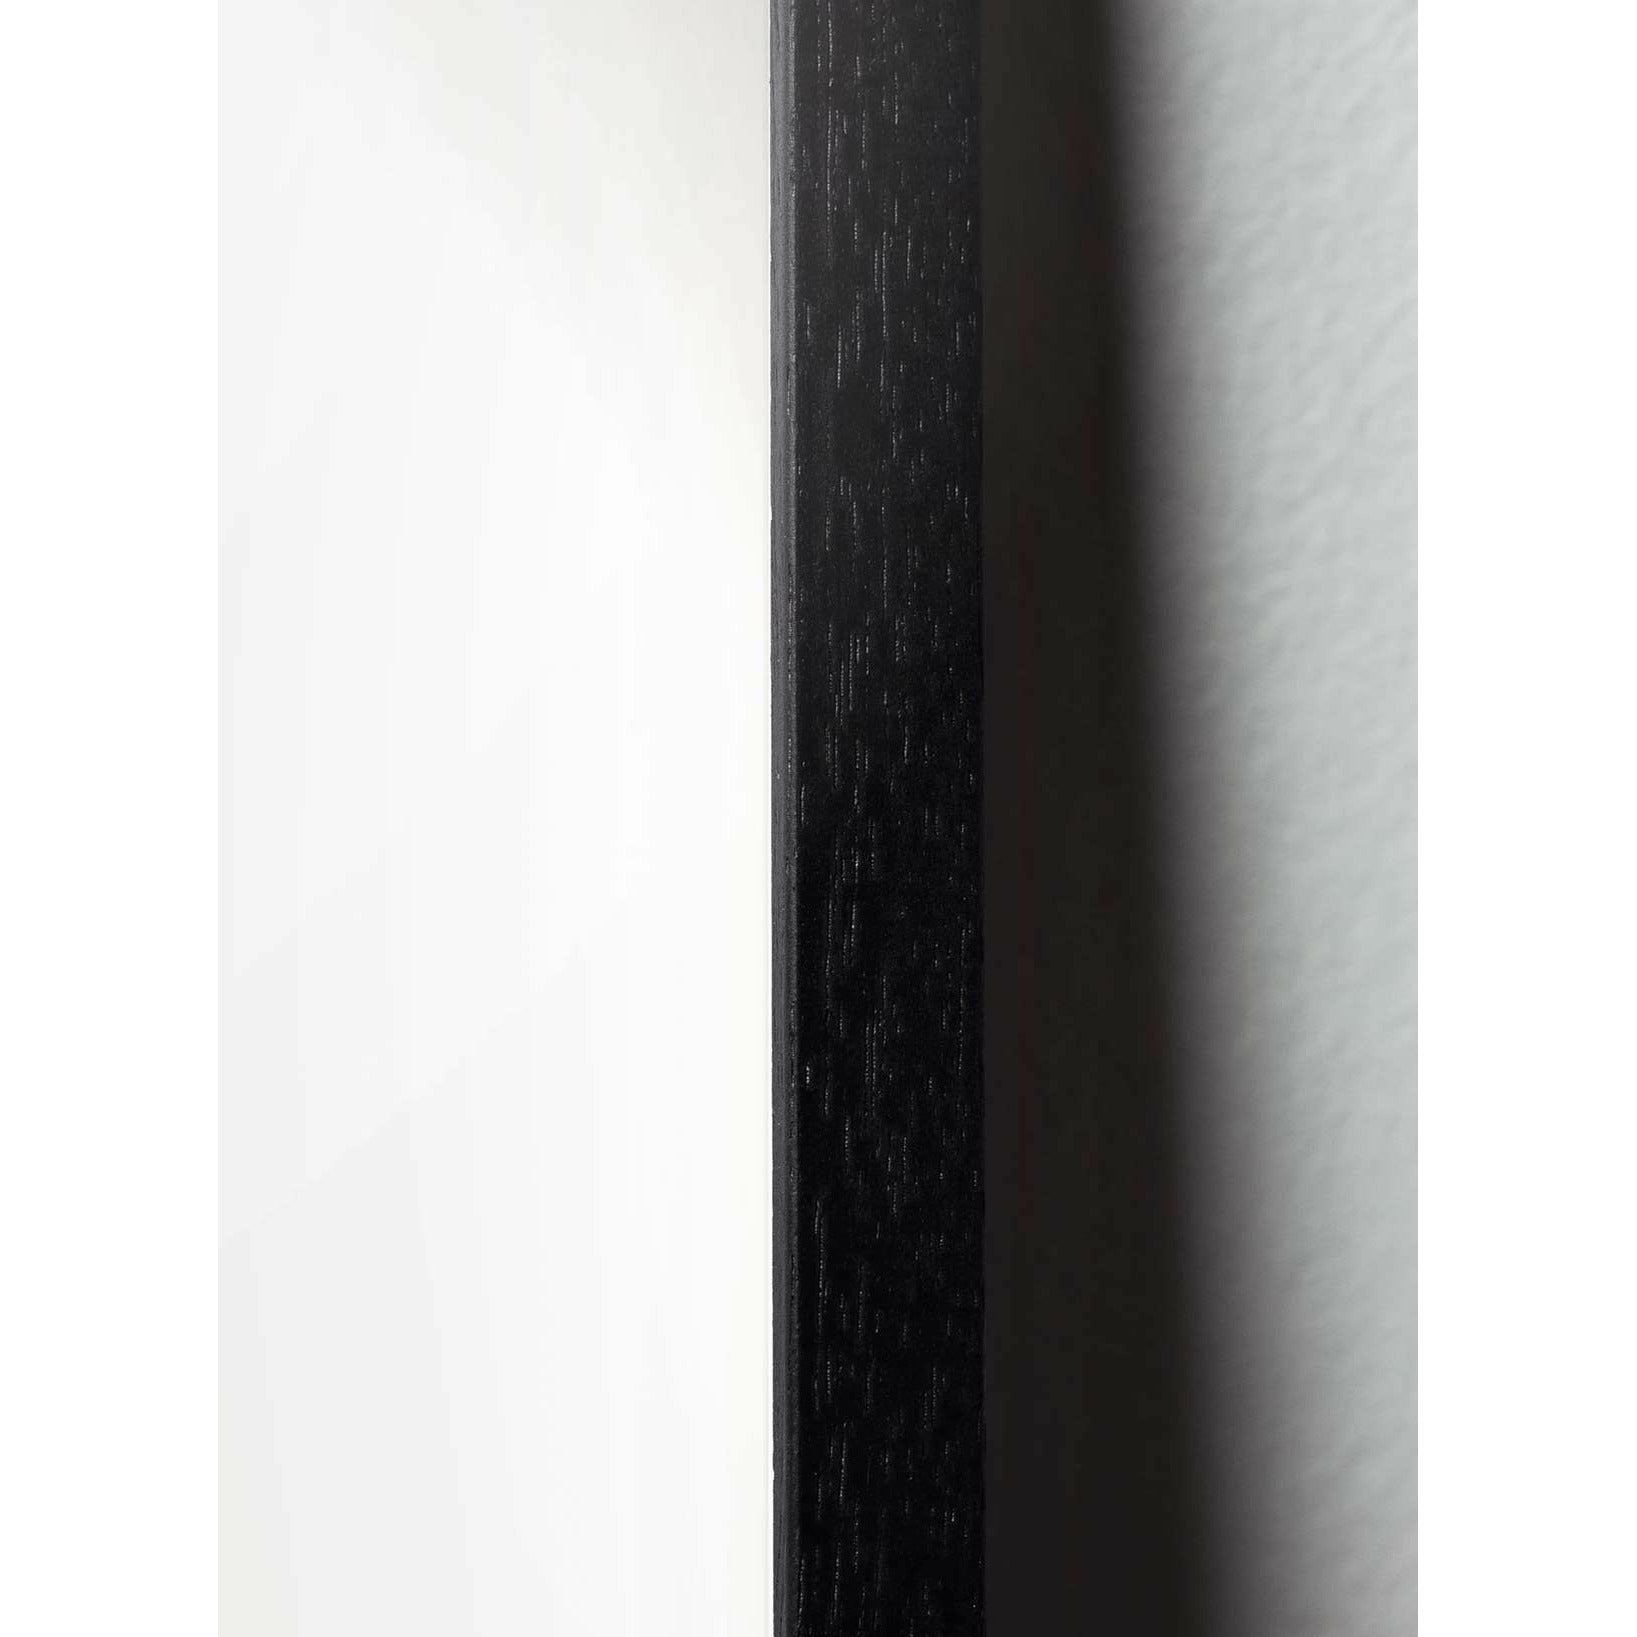 Plakát vejce z mozku, rám v černém lakovaném dřevu 50x70 cm, bílé pozadí